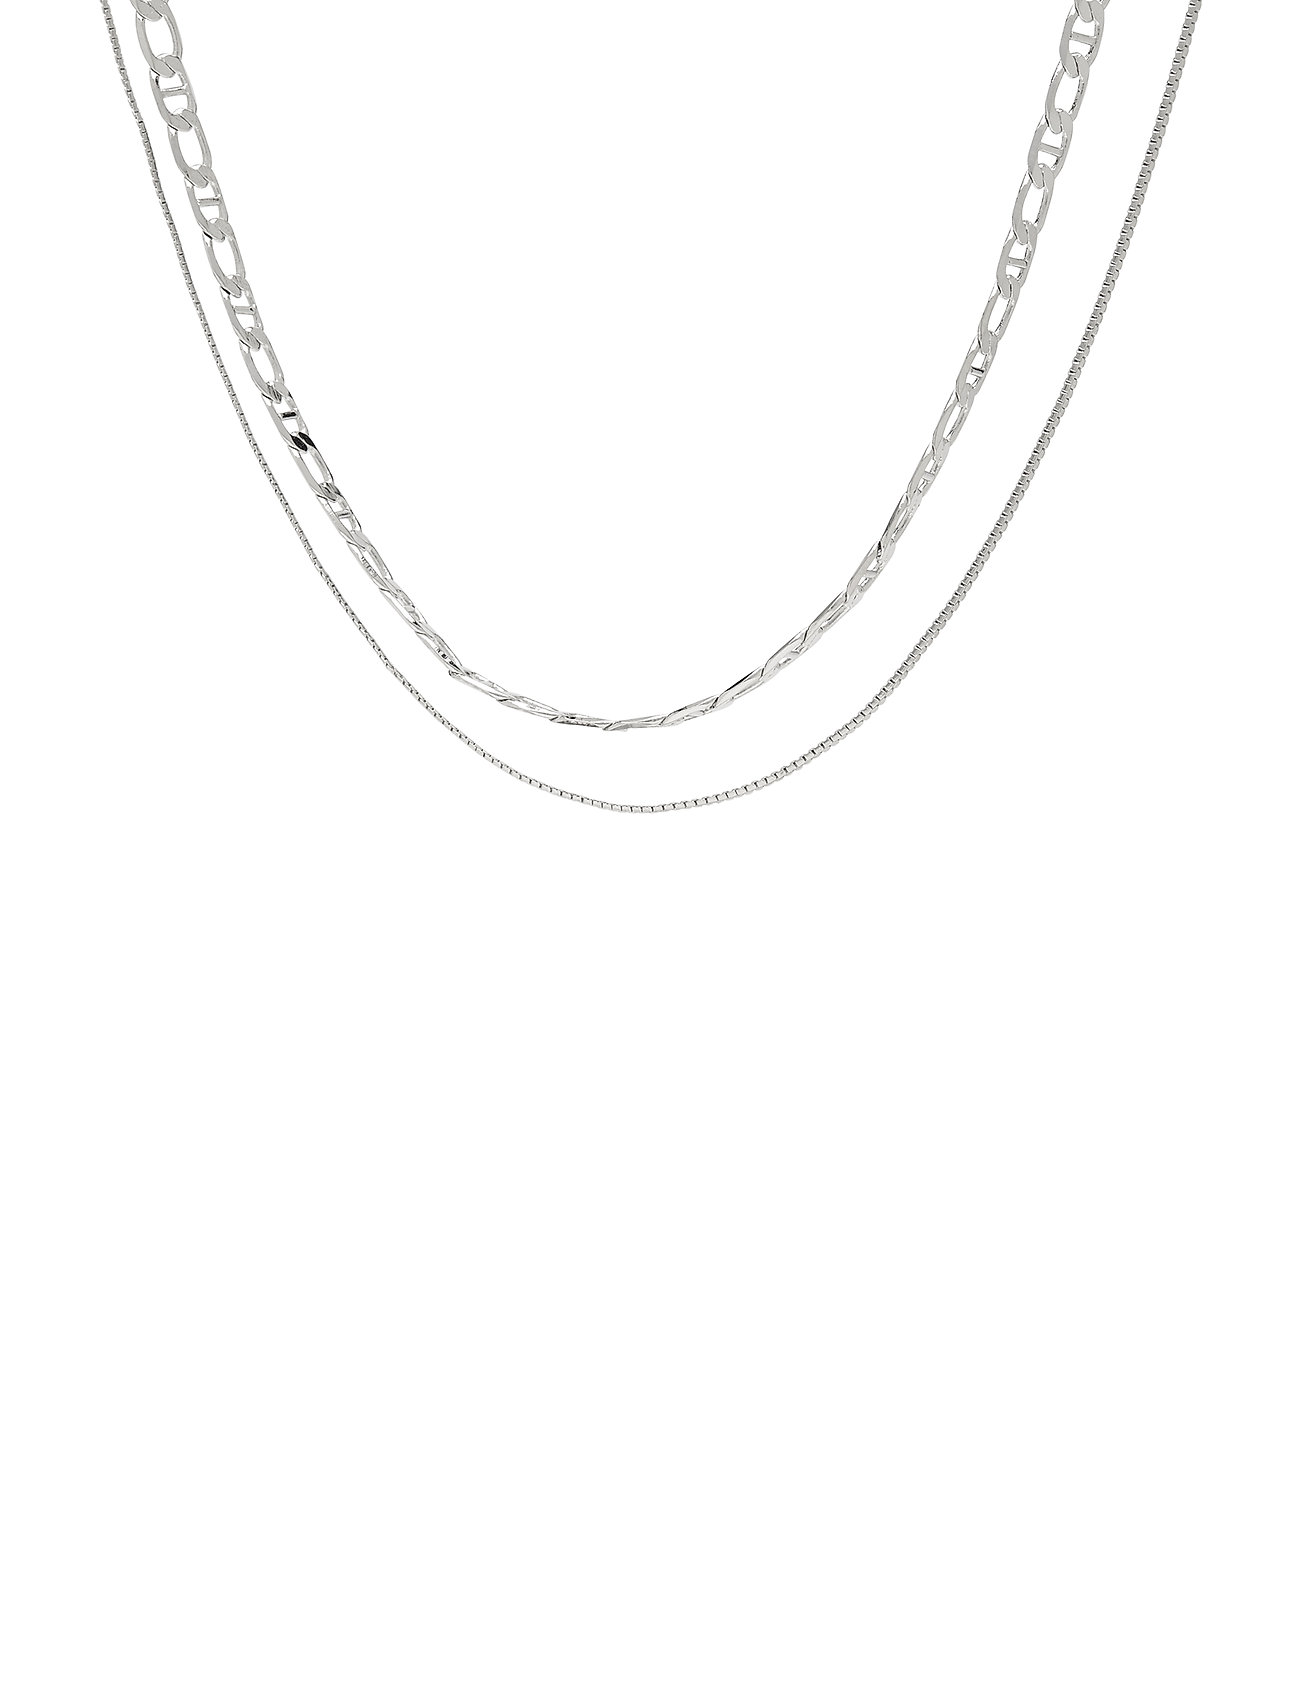 Pcnolla Combi Necklace D2d Accessories Jewellery Necklaces Chain Necklaces Hopea Pieces